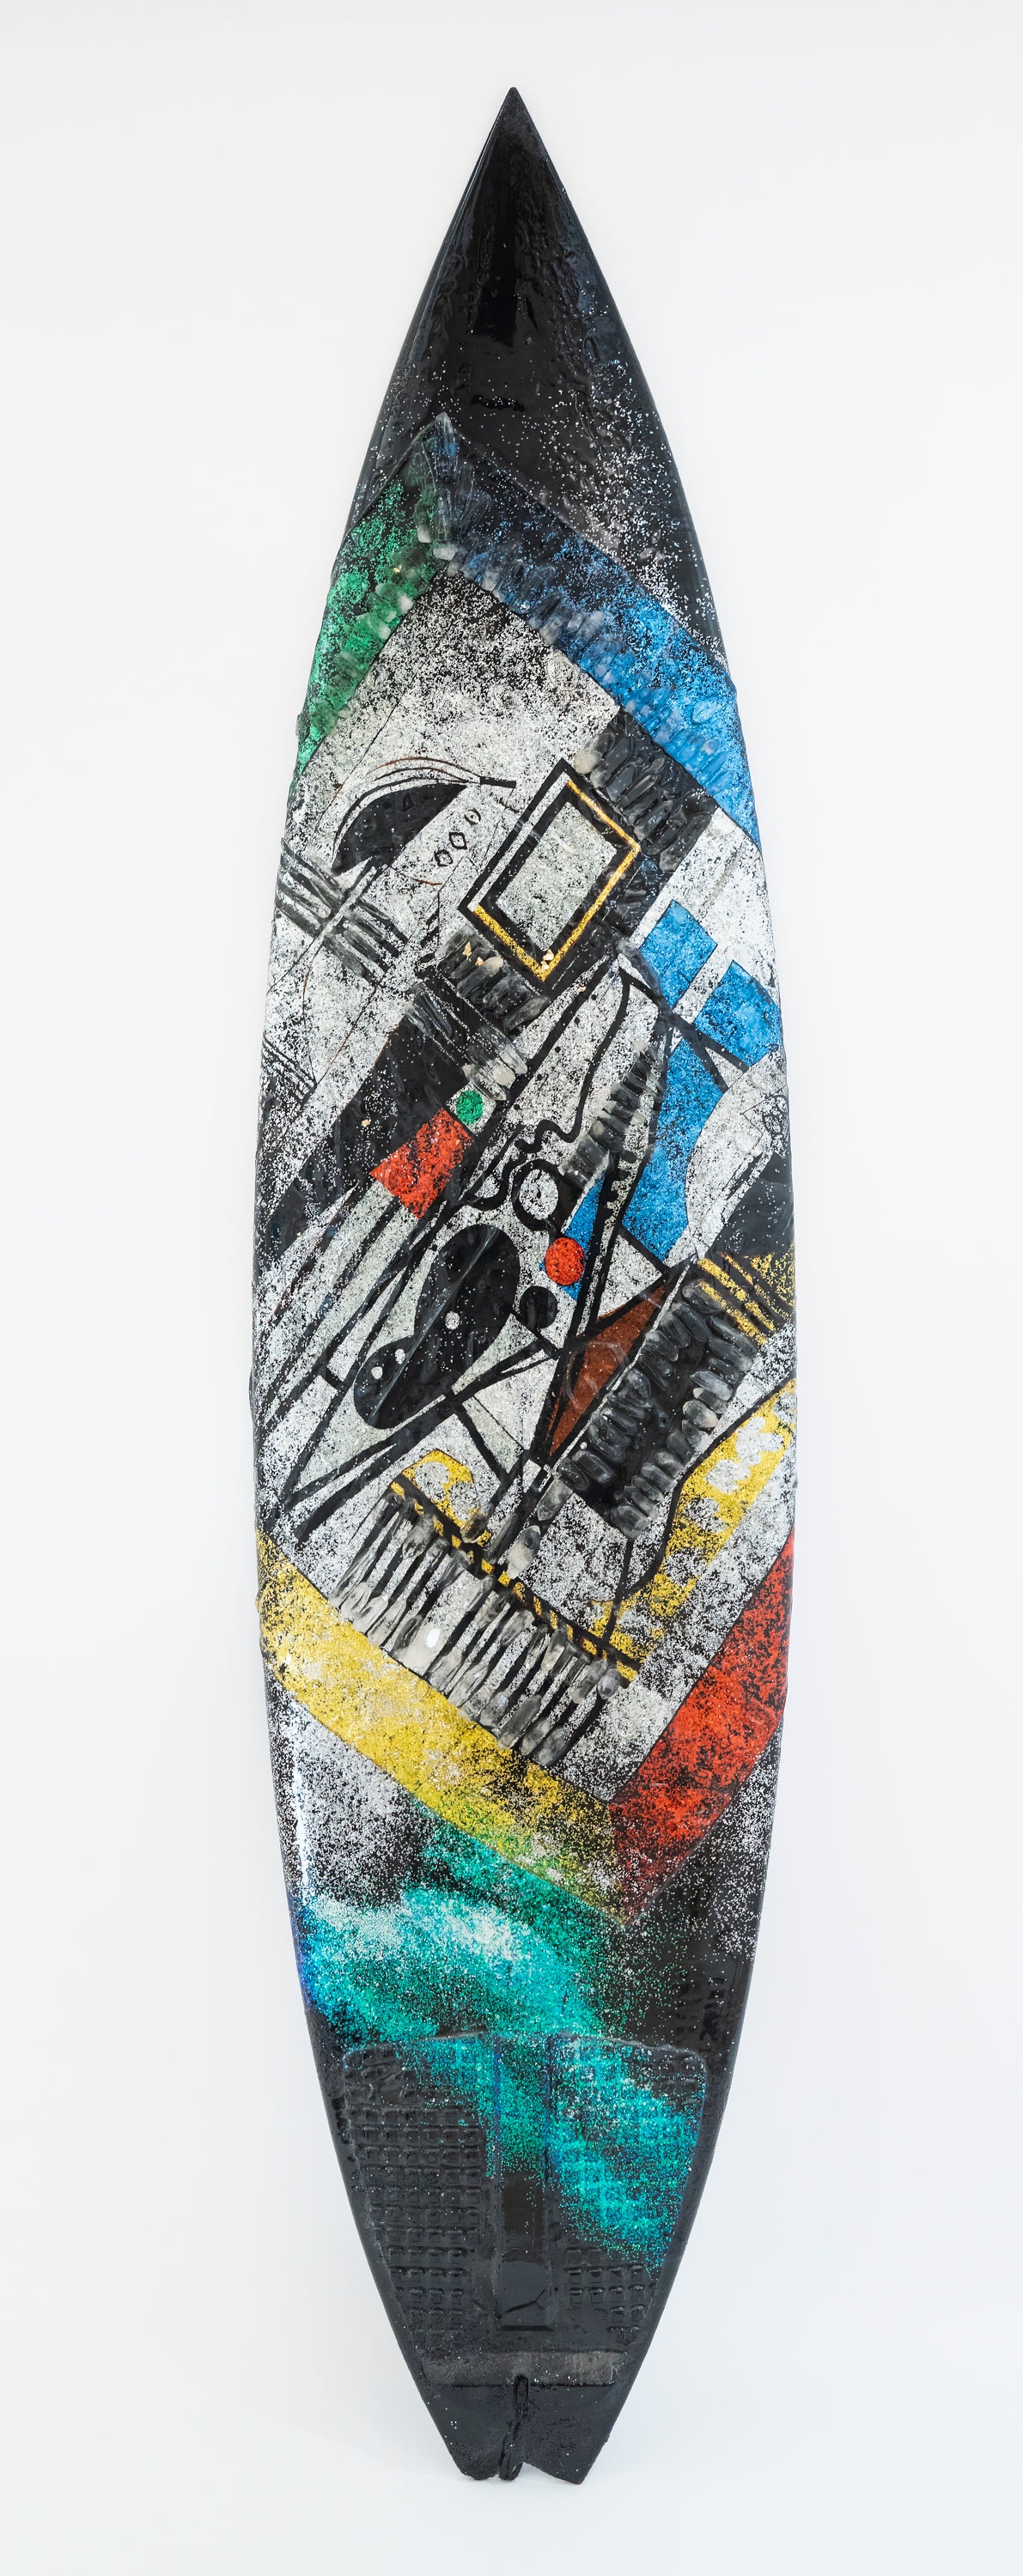 Fine art Collection - surfboard - Dream Chaser - Aviva Stanoff Design